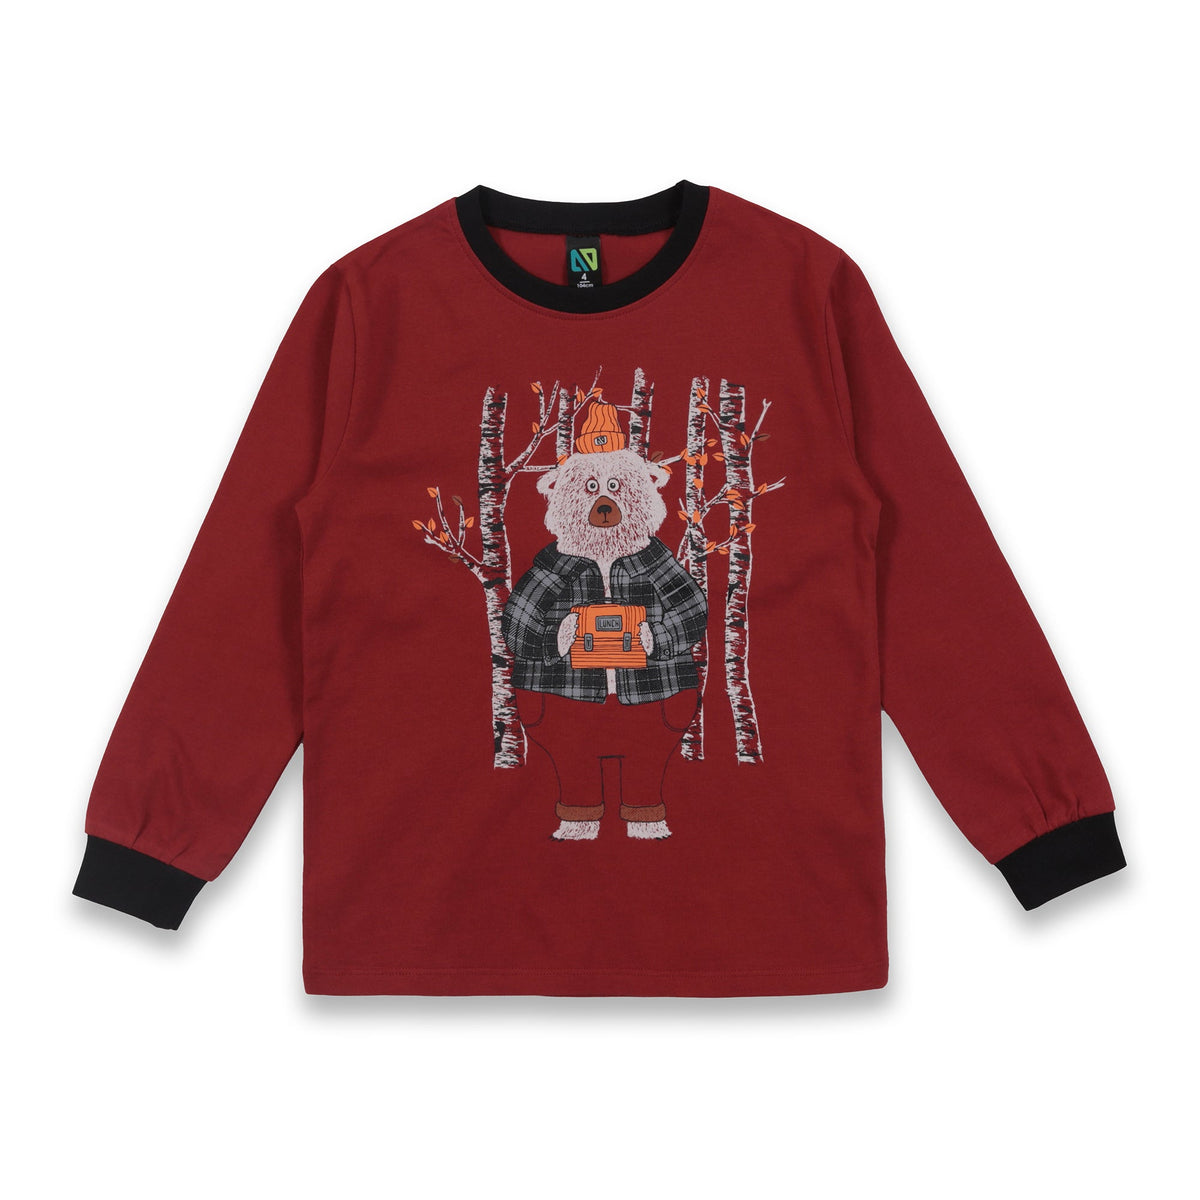 Pyjama pour enfant garçon par Nanö | F23P01 Rouge | Boutique Flos, vêtements mode pour bébés et enfants